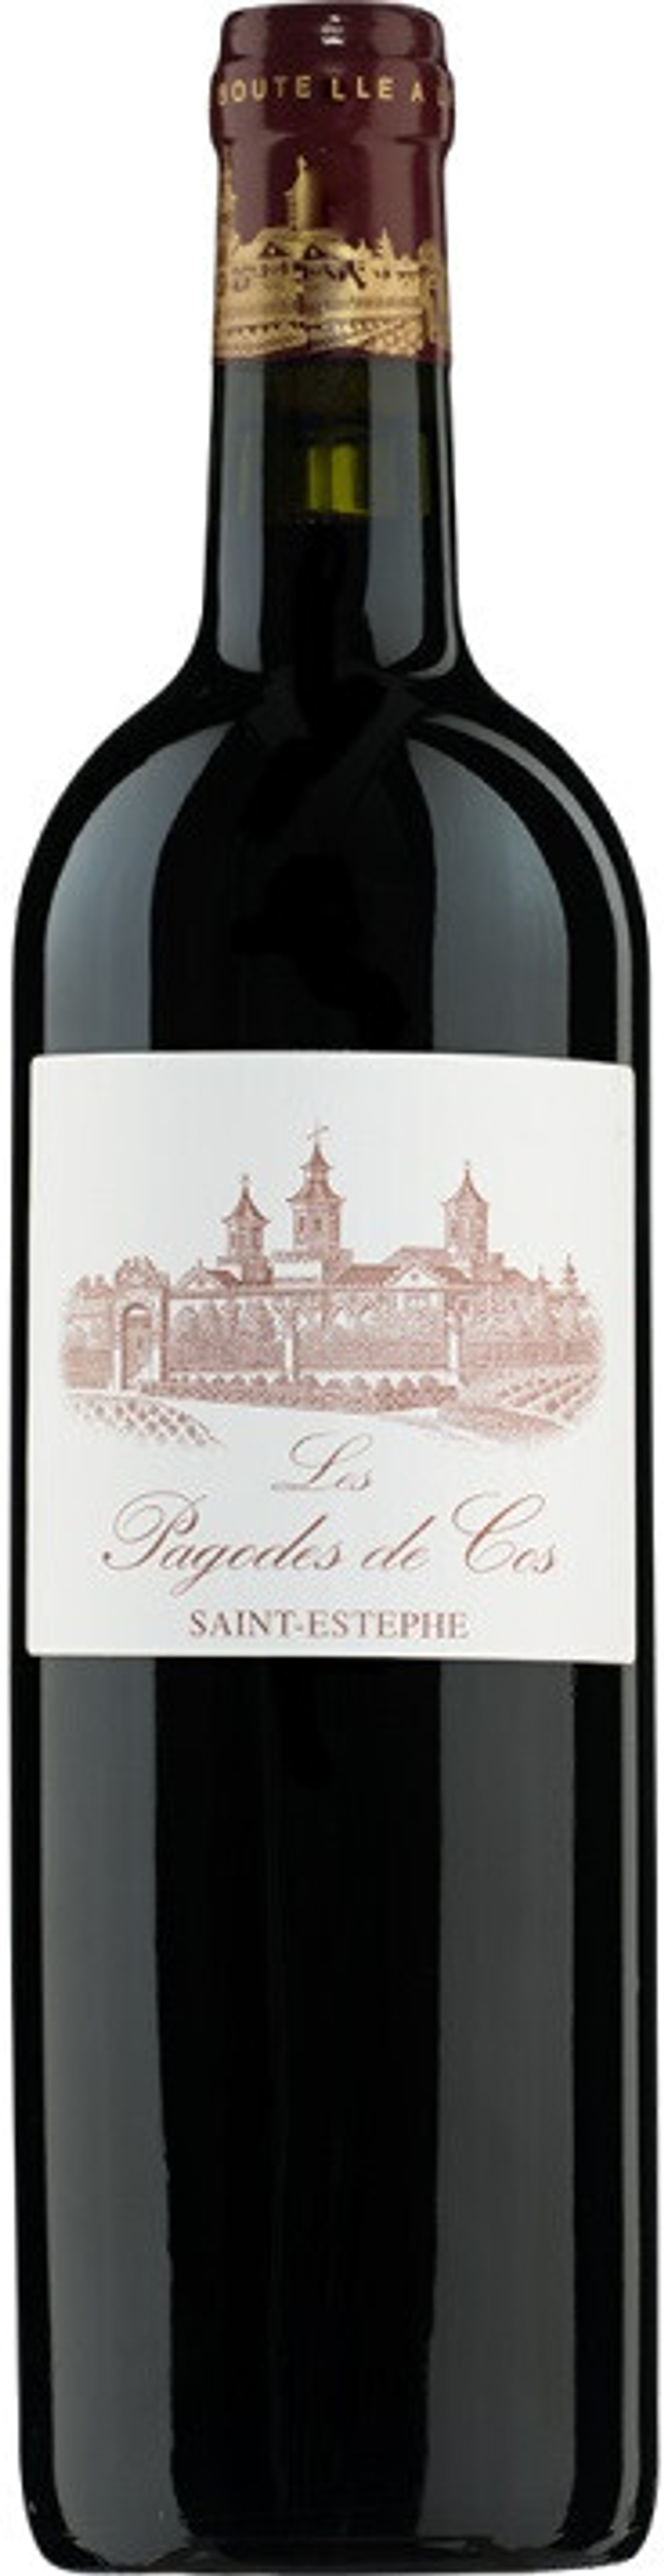 Вино Les Pagodes de Cos, 0,75 л.